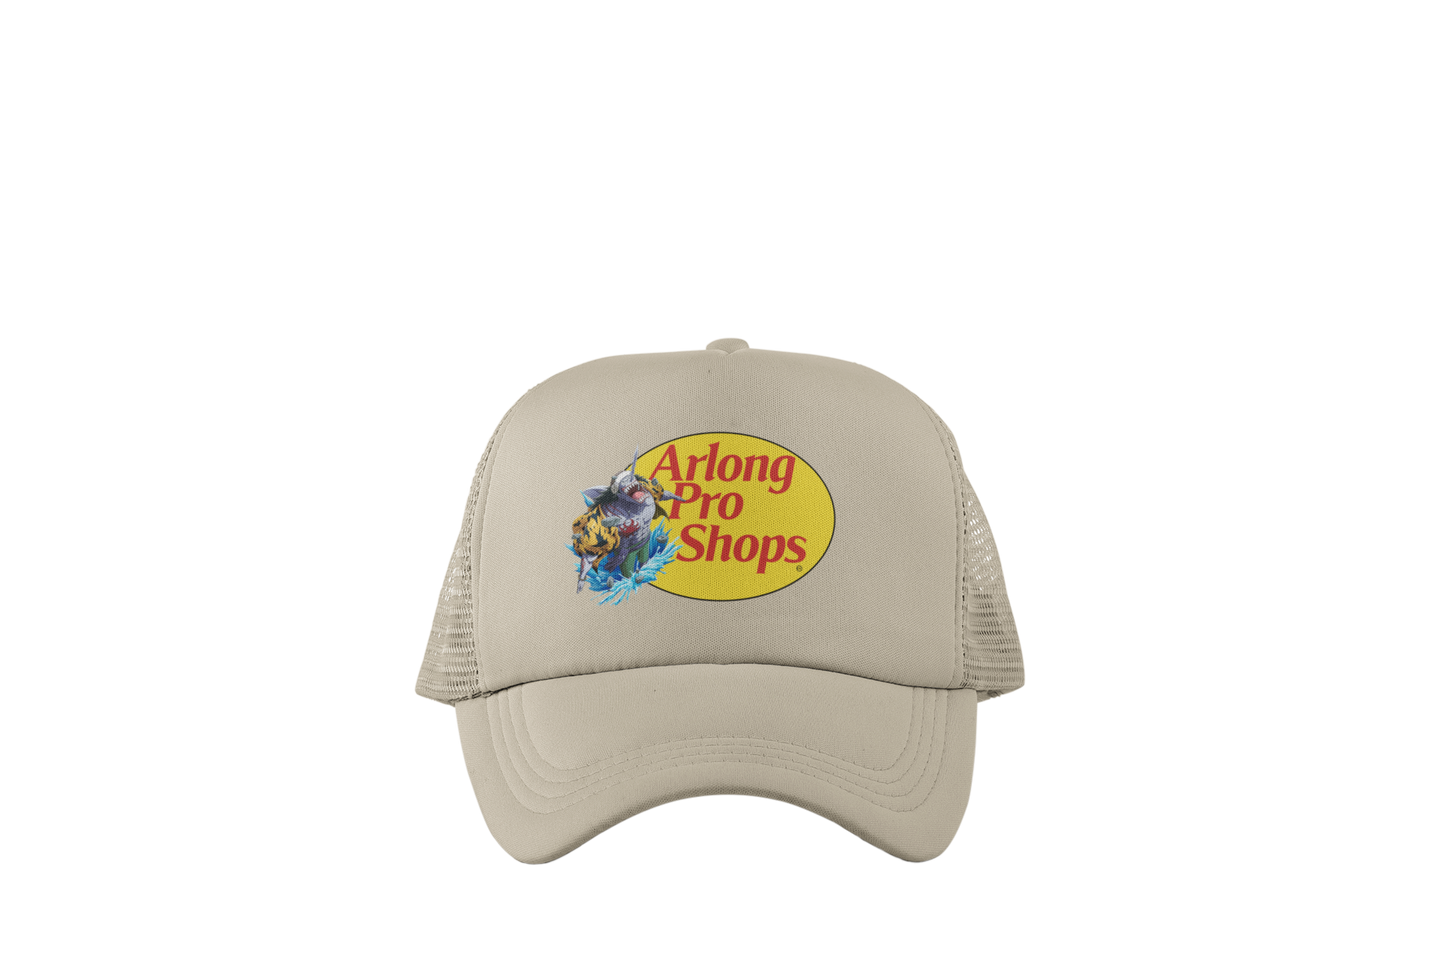 Arlong Pro Shops Trucker Hats